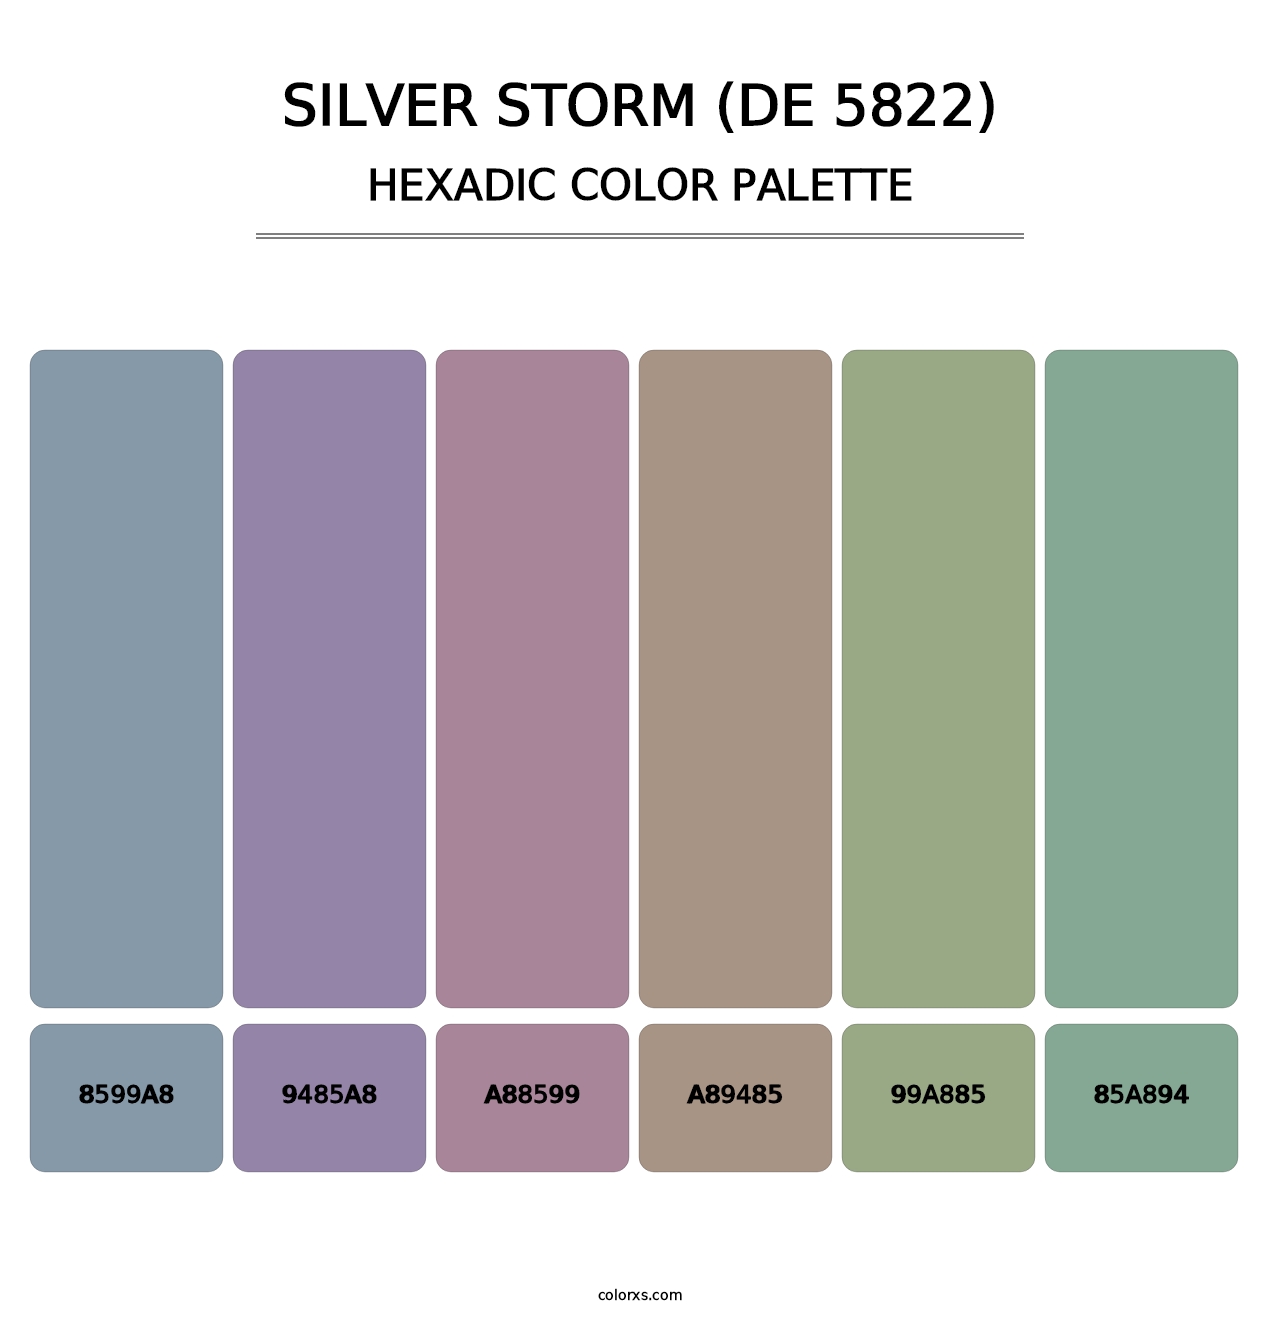 Silver Storm (DE 5822) - Hexadic Color Palette